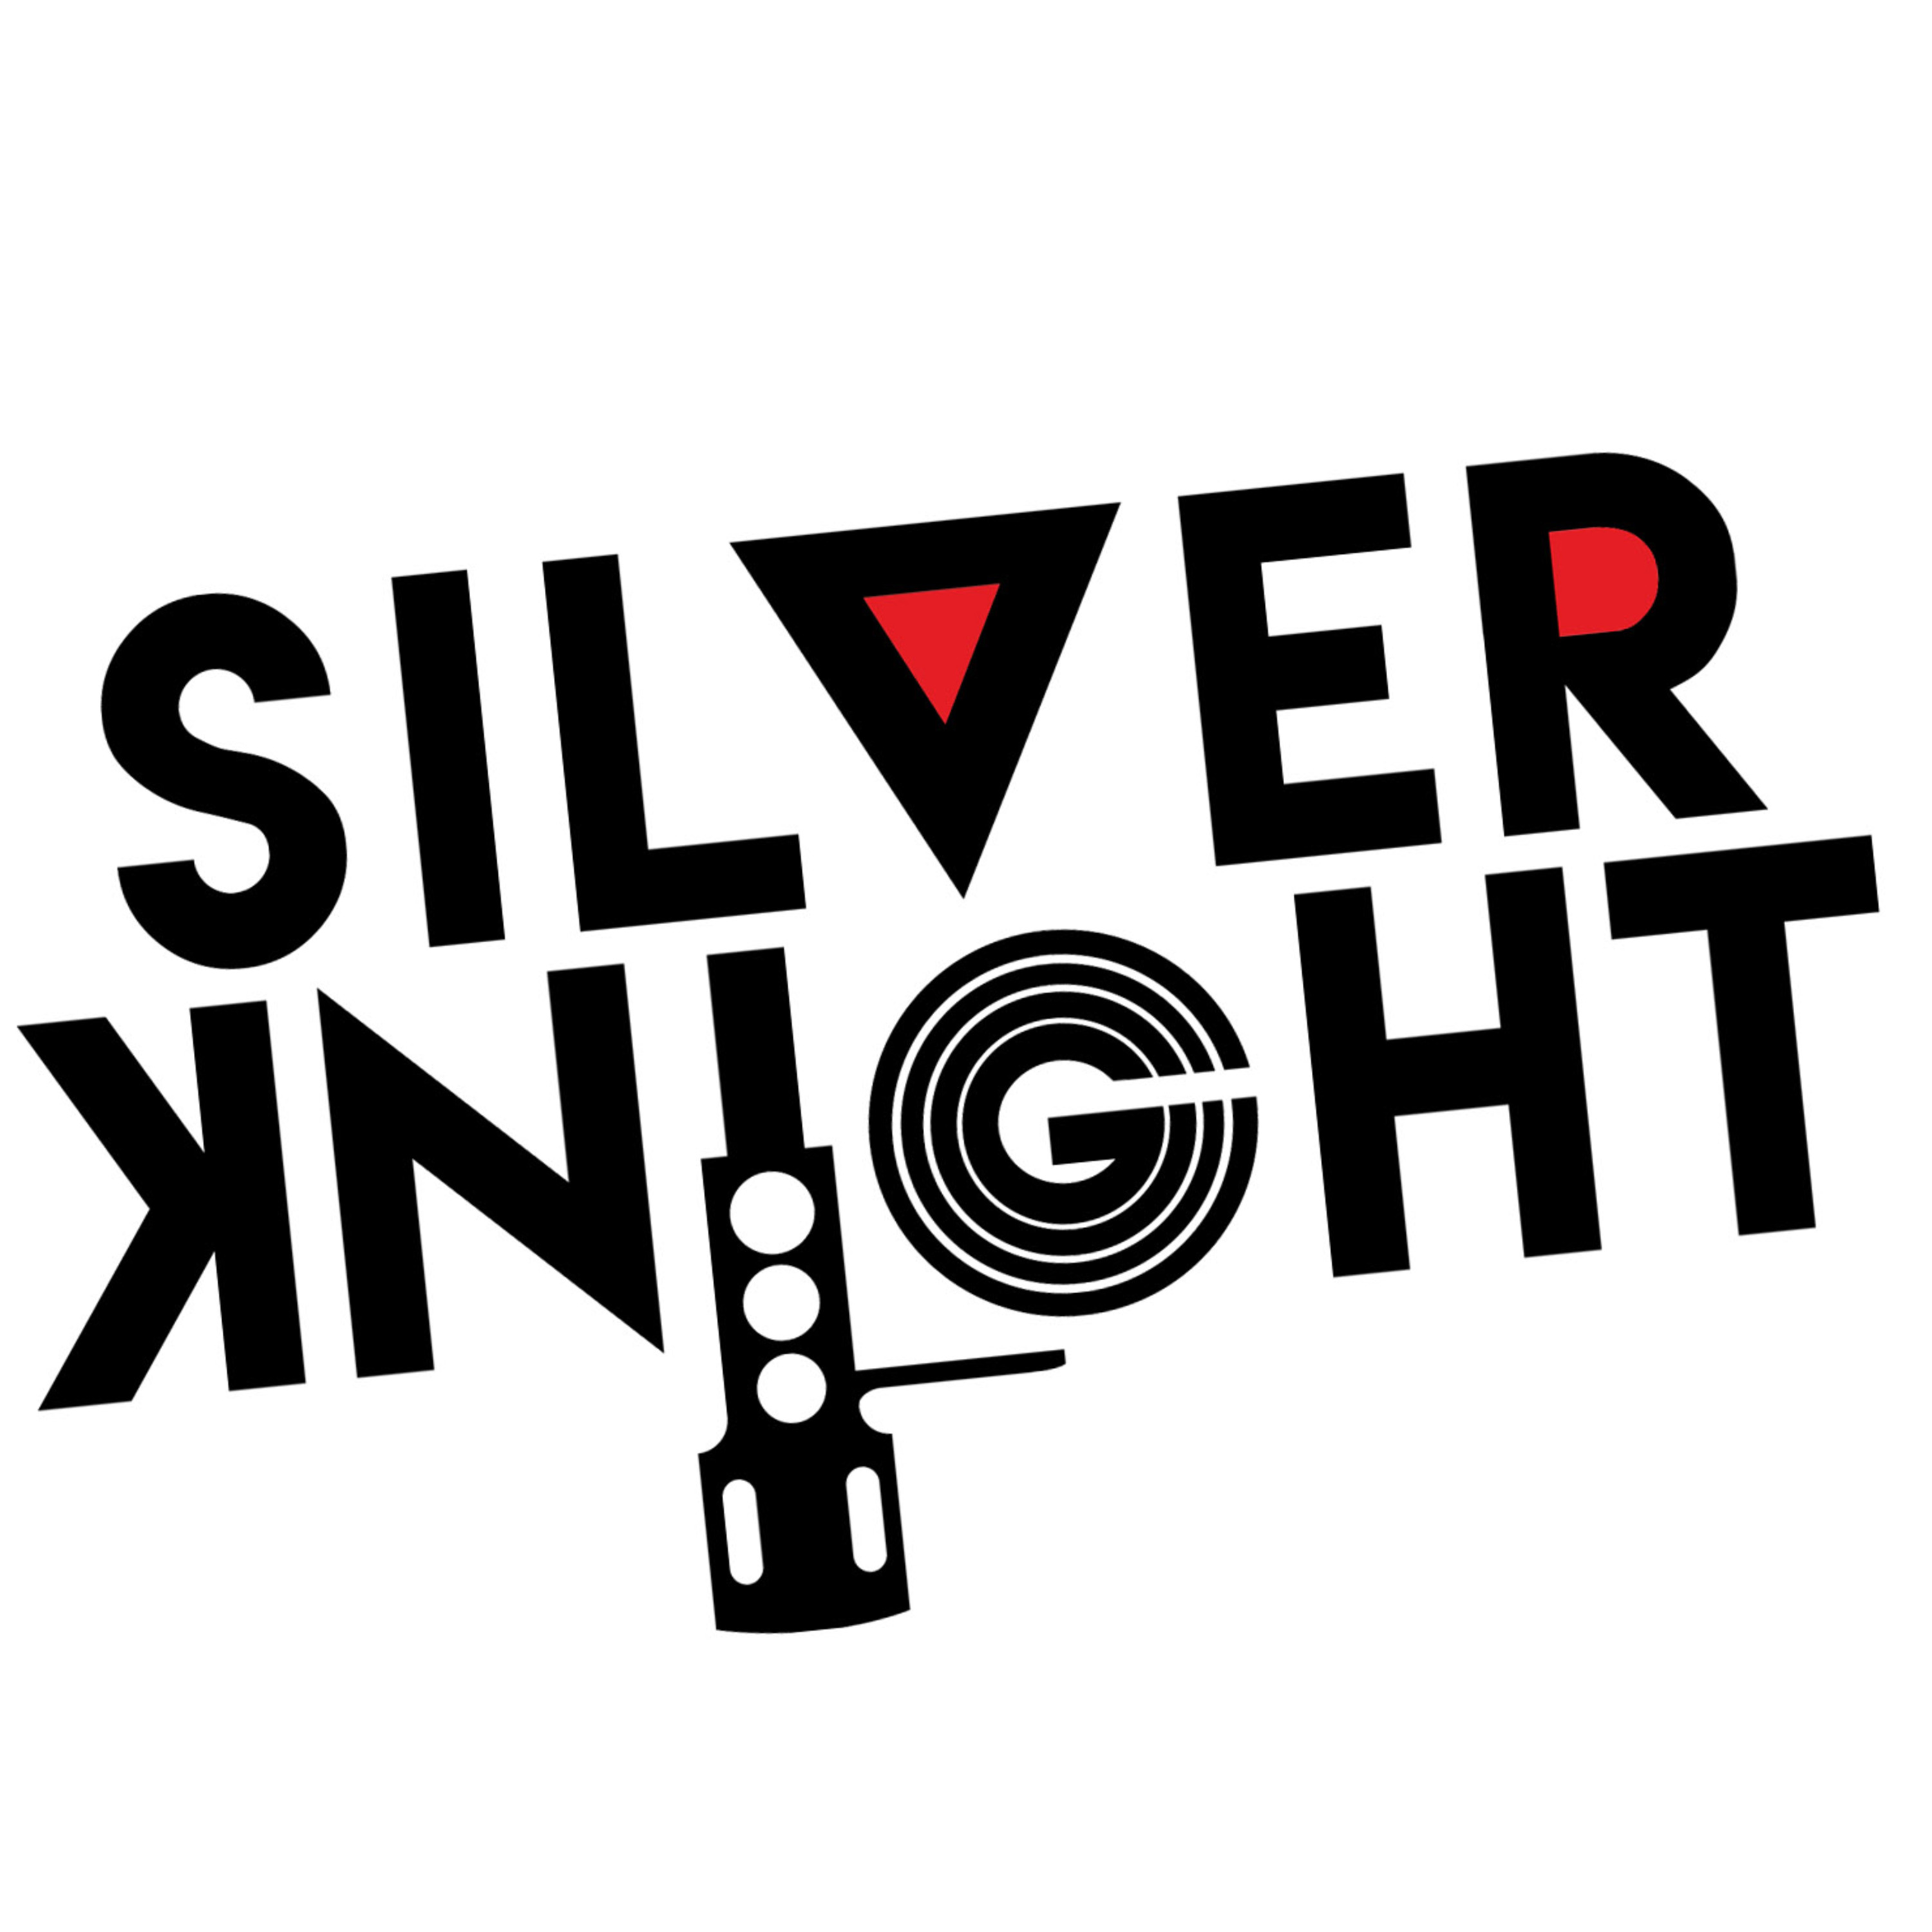 Dj Silver Knight